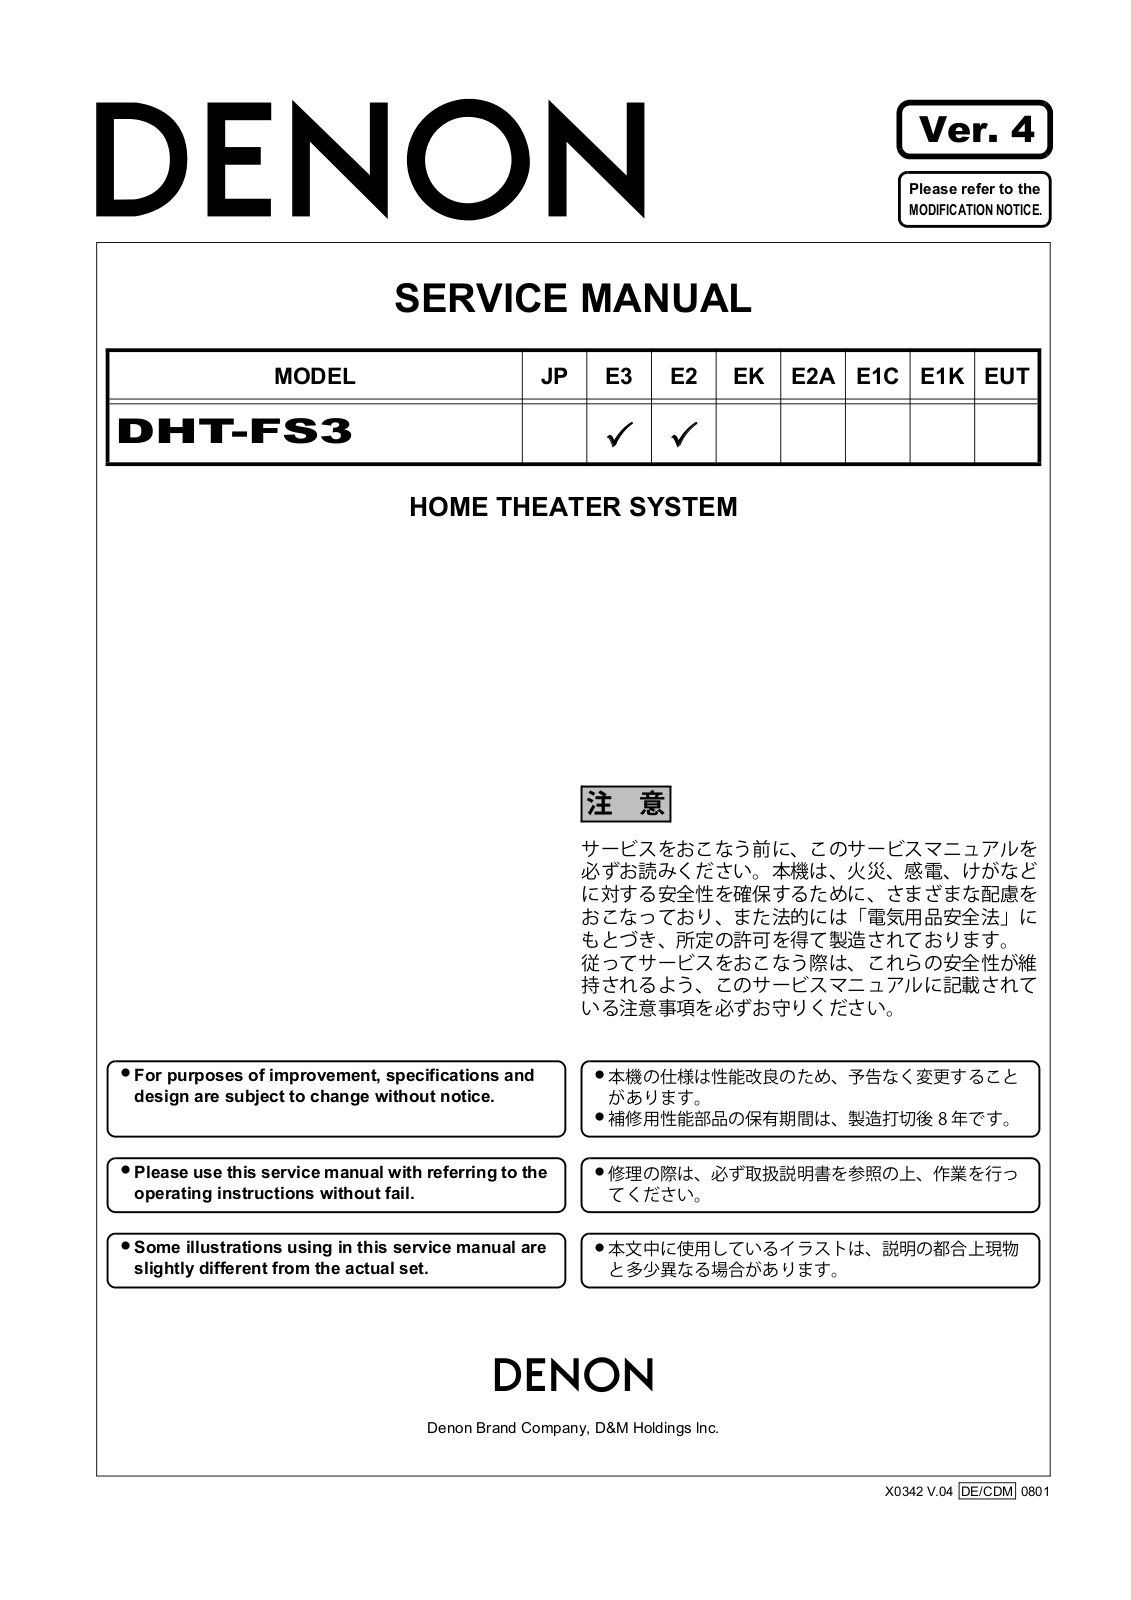 Denon DHT-FS3 Service Manual